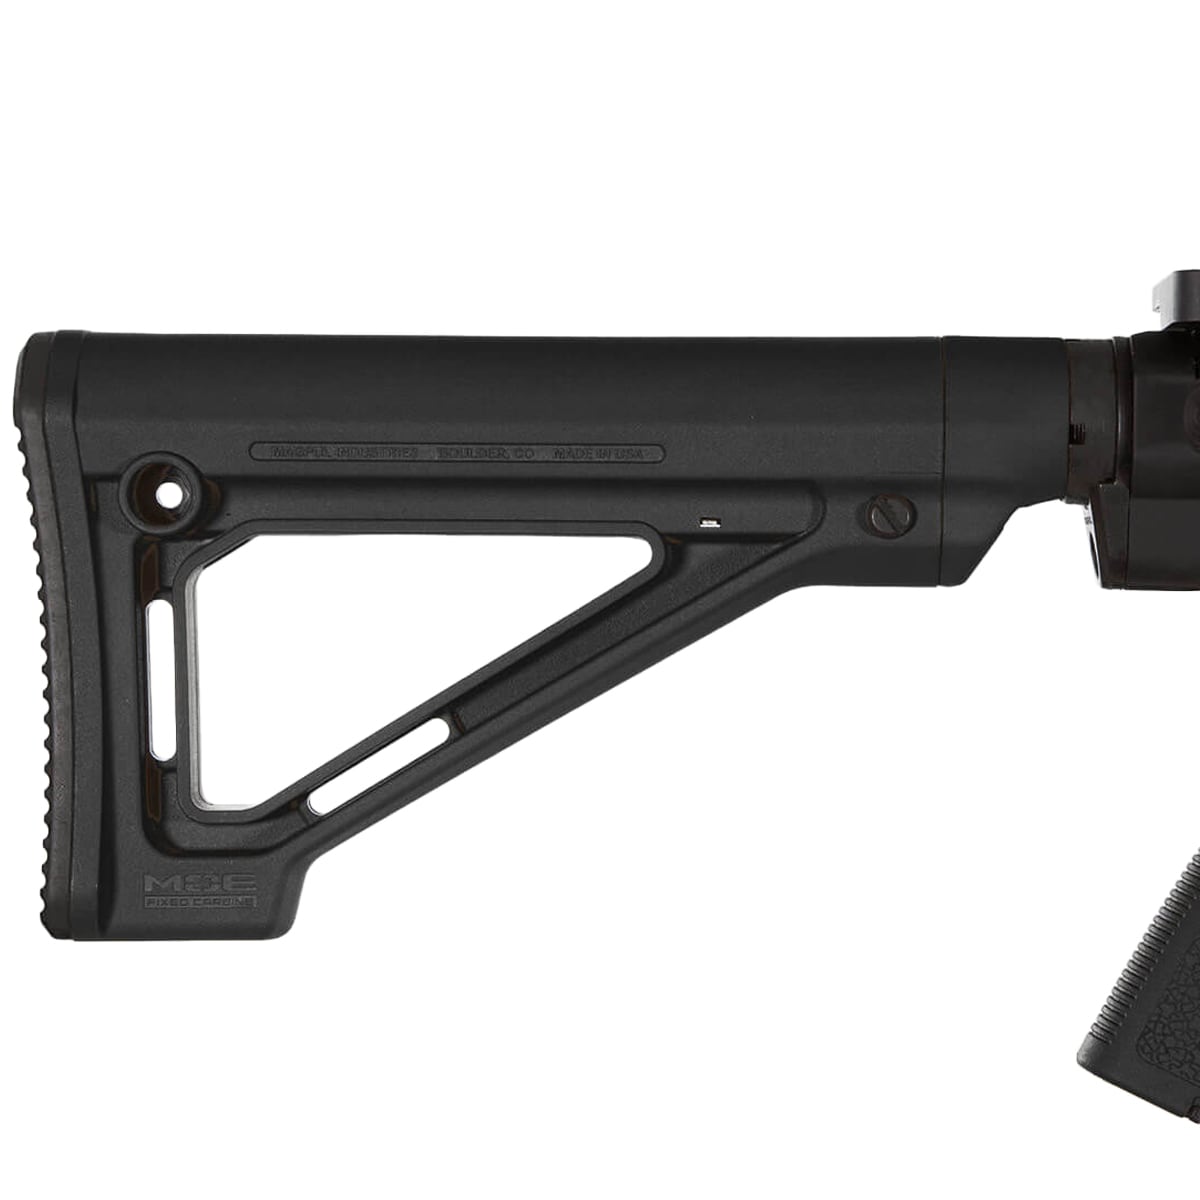 Kolba Magpul MOE Fixed Carbine Stock Mil-Spec do karabinków AR15/M4 - Black